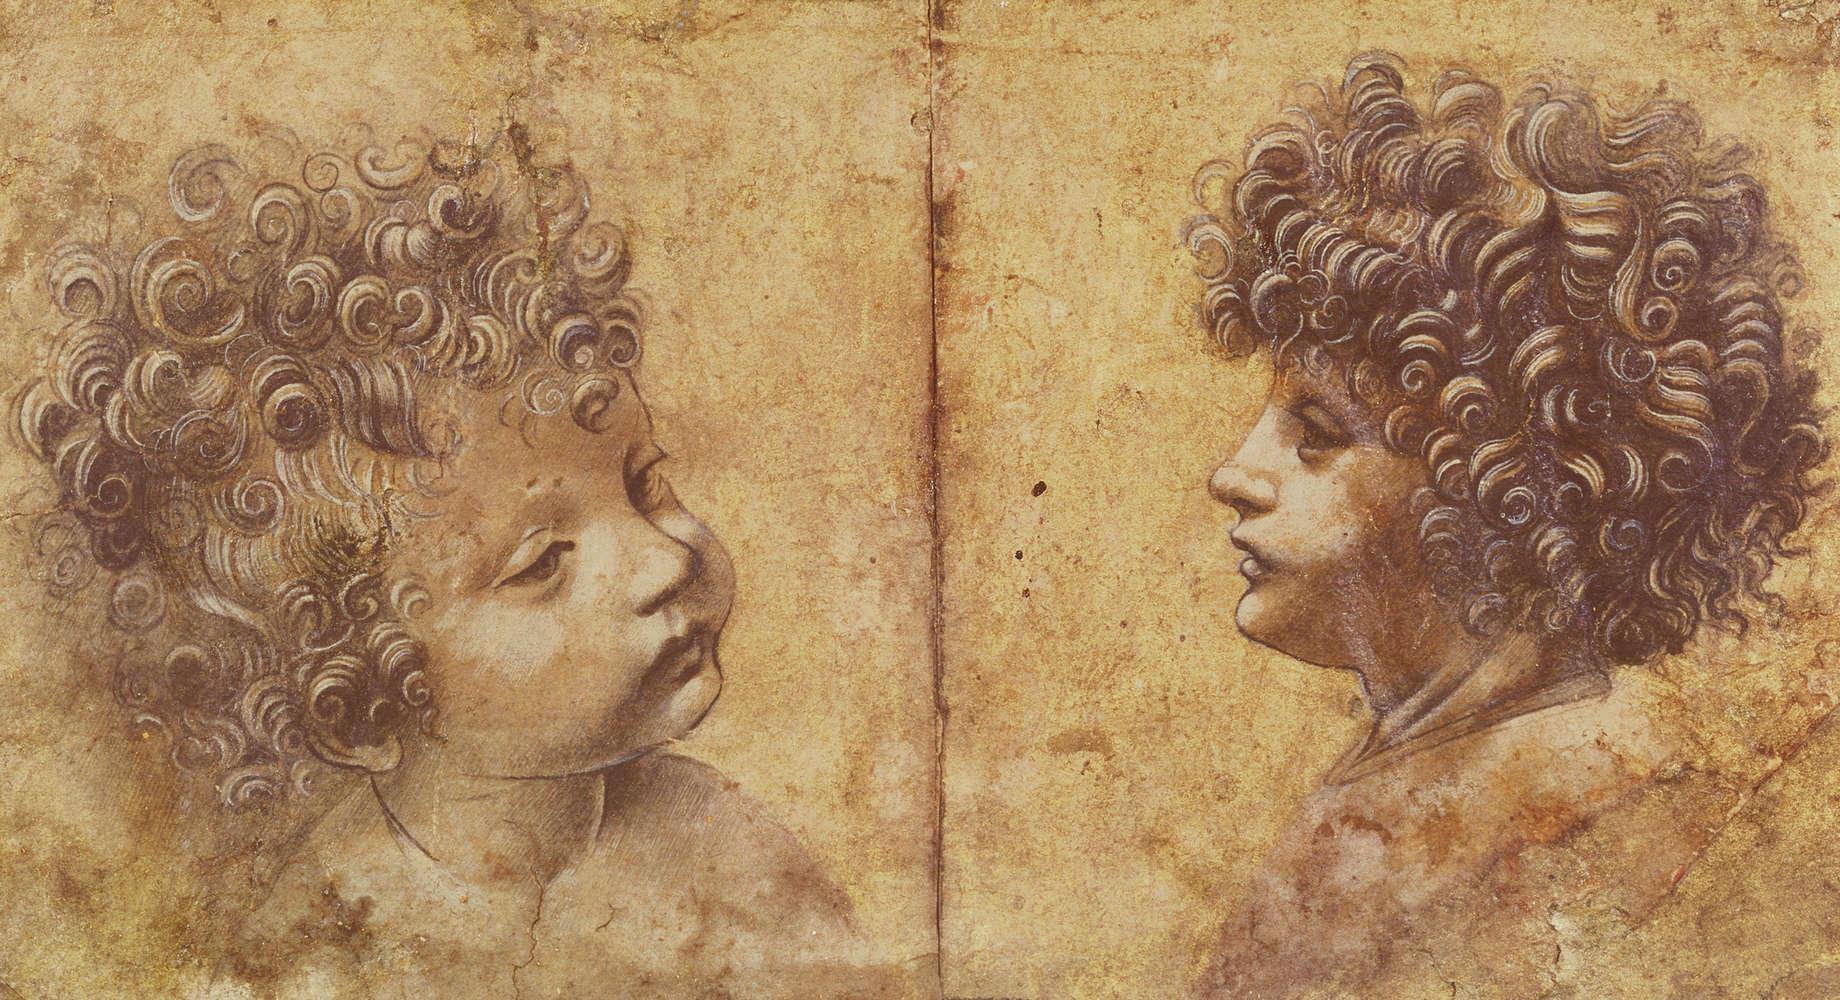             Papier peint "Étude d'une tête d'enfant" de Léonard de Vinci
        